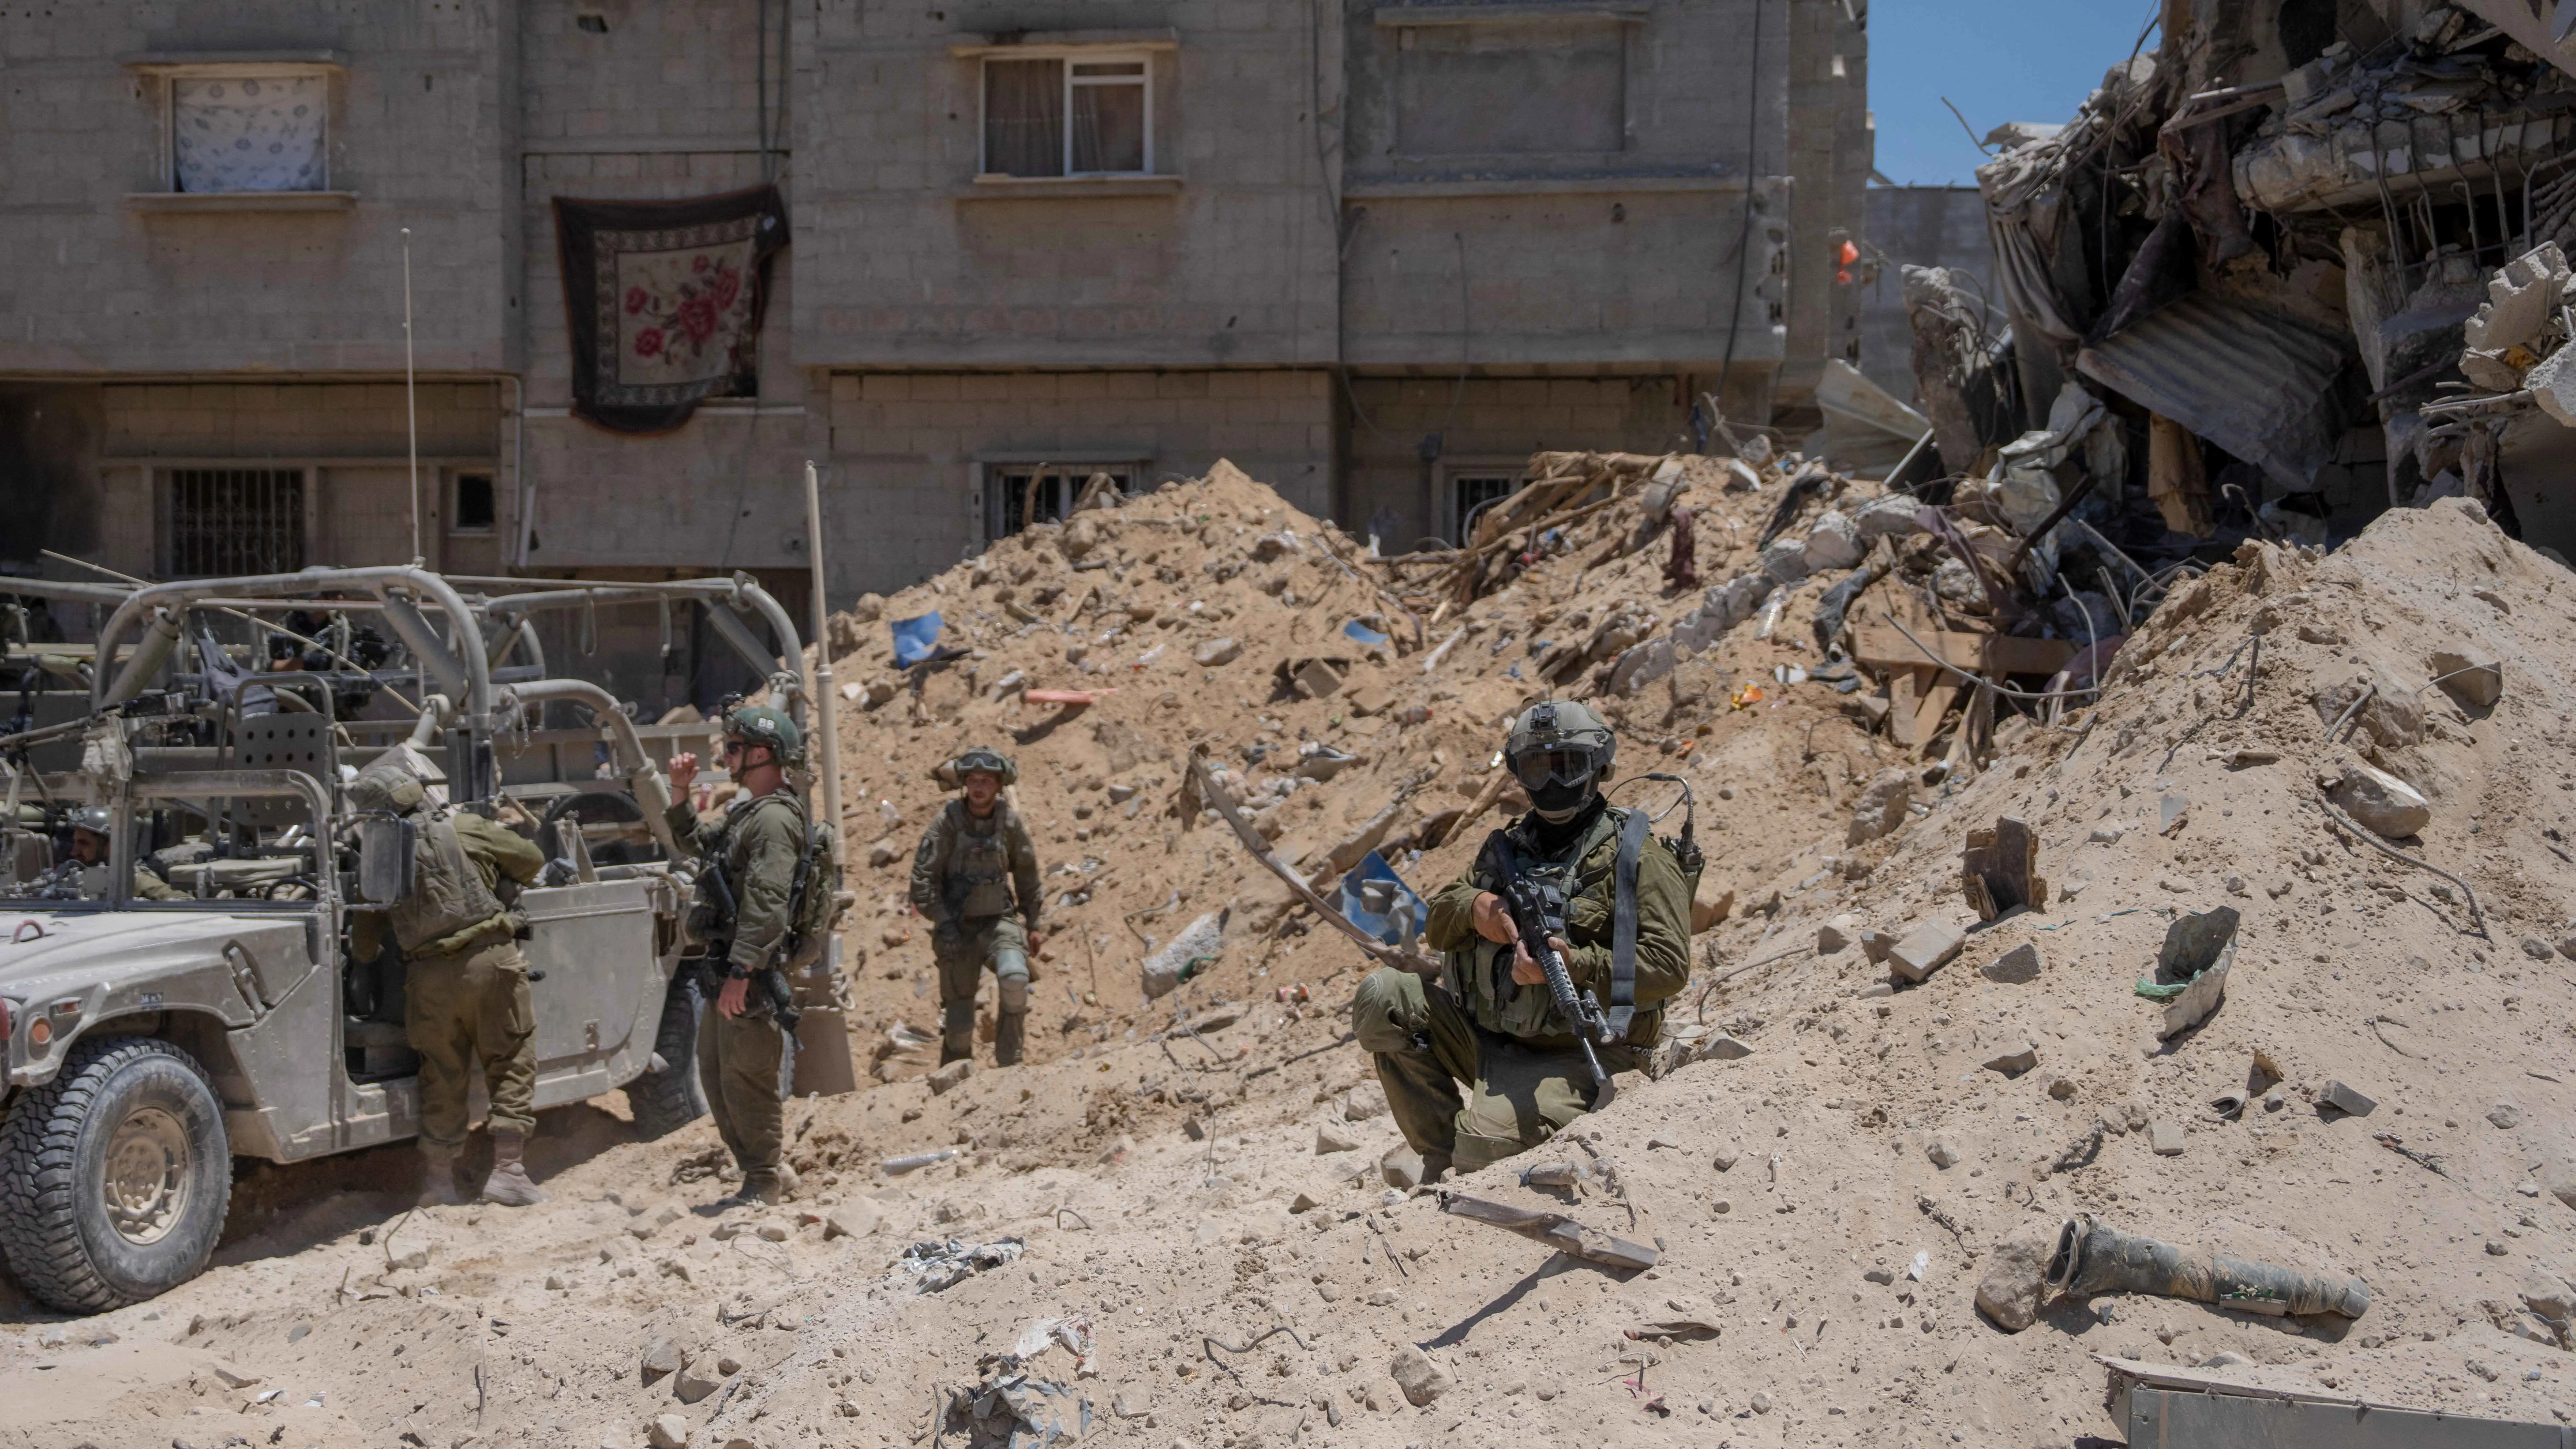 واللا: شرطة حماس غدت هدفًا أساسيًا للجيش الإسرائيلي بعد "القسام"